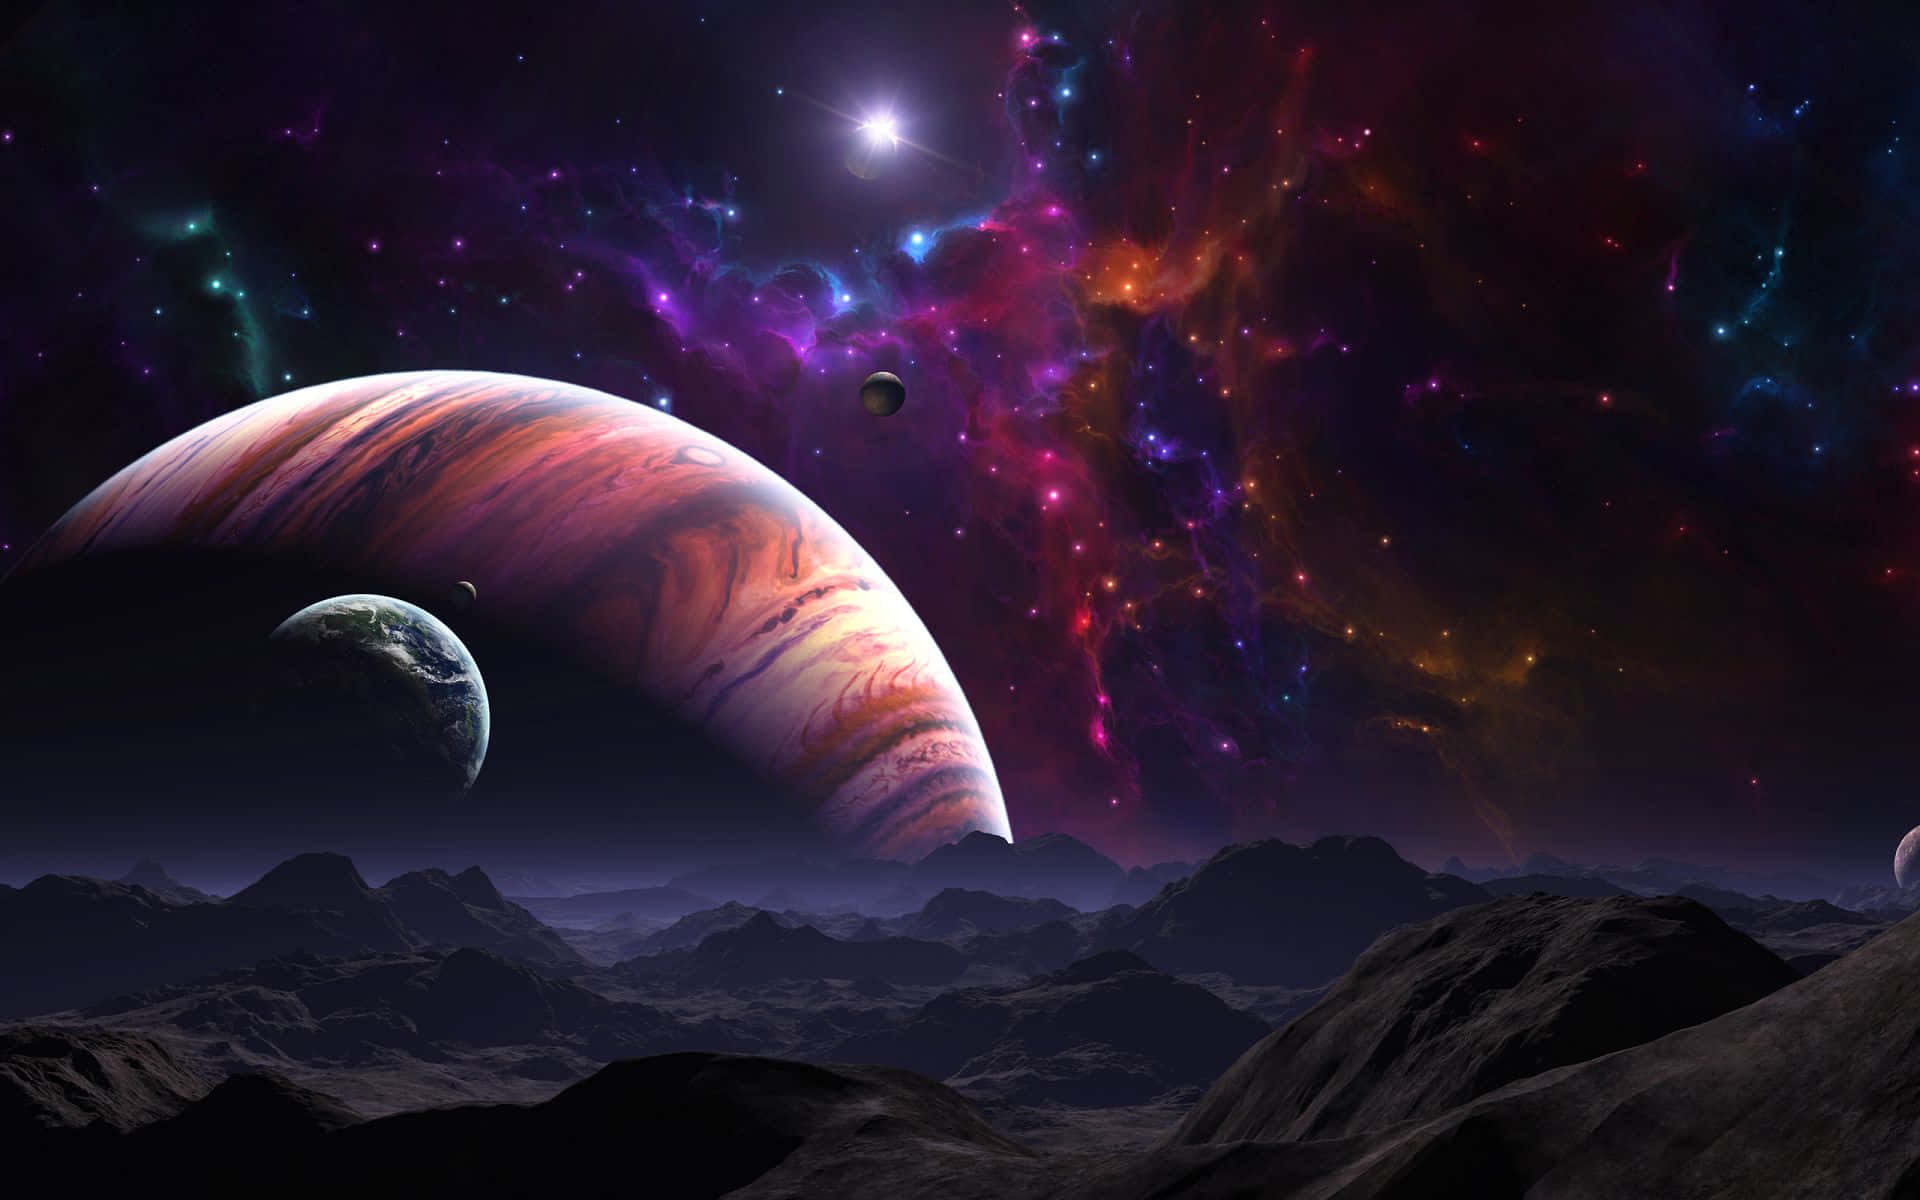 Högupplöstbakgrundsbild Av Jupiter I Galaxen.